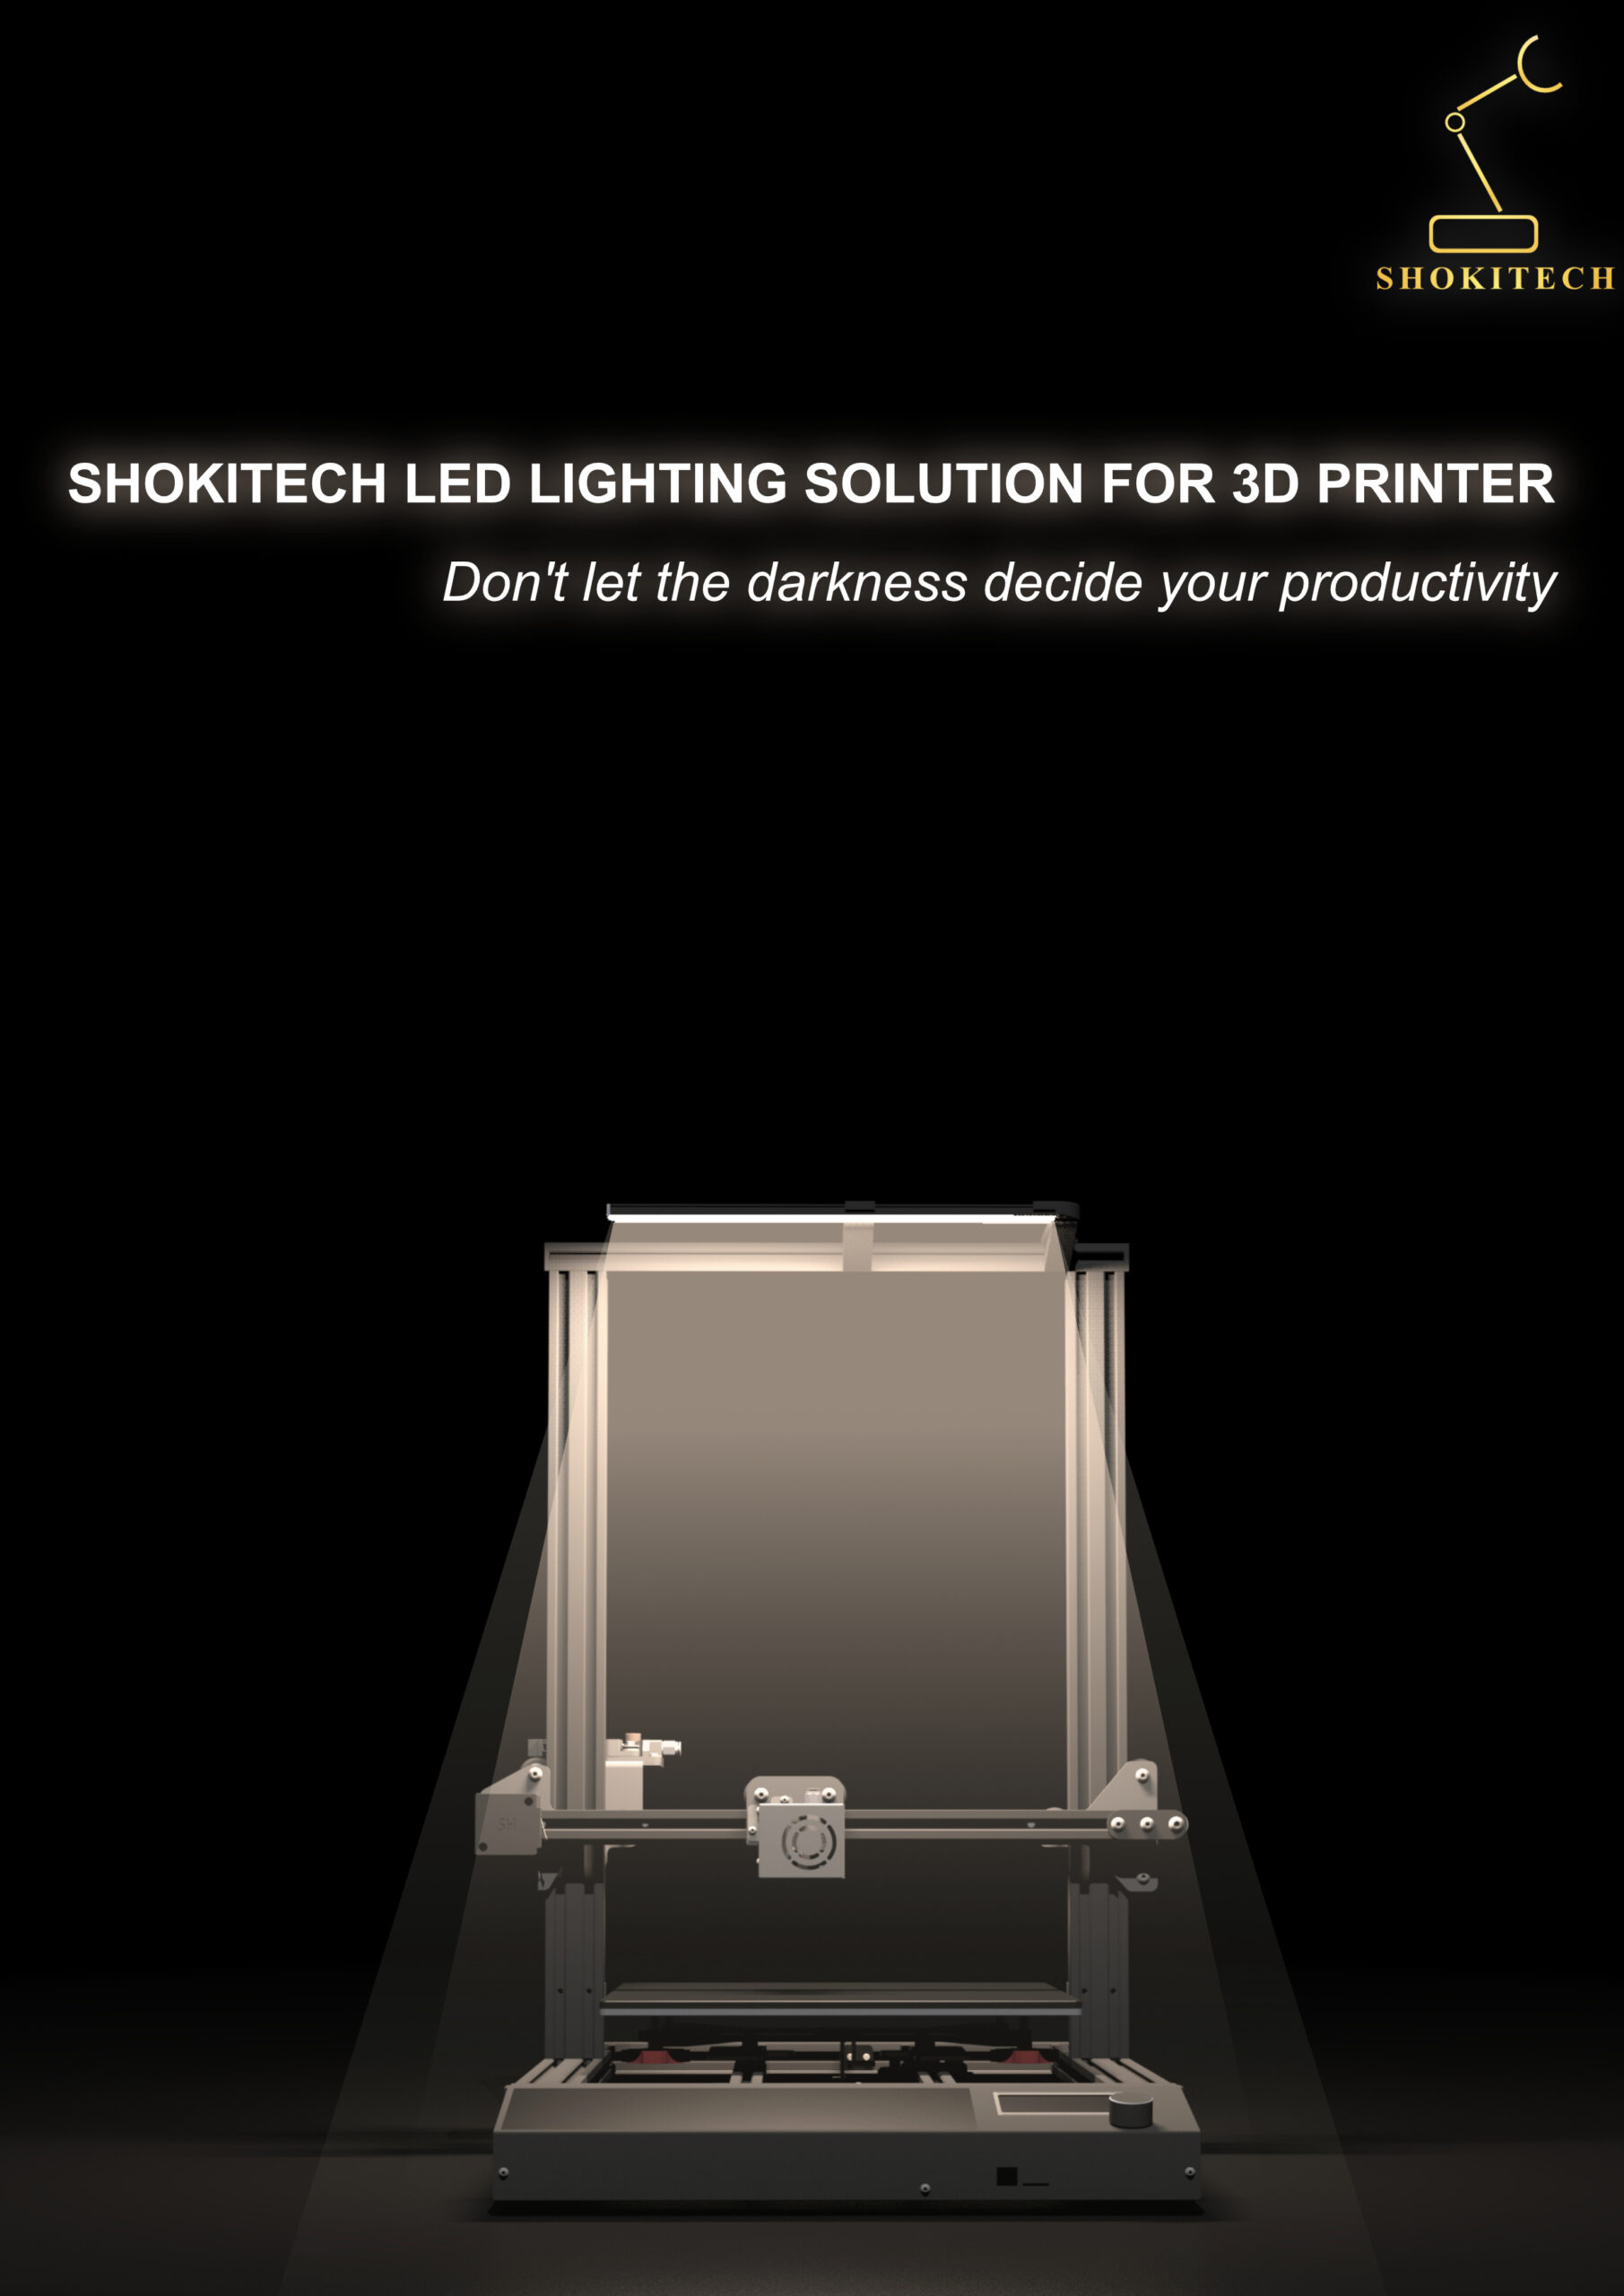 Creality Ender-3 V2 Neo Led Light Bar Kit 24v/5w 3d Printer Part